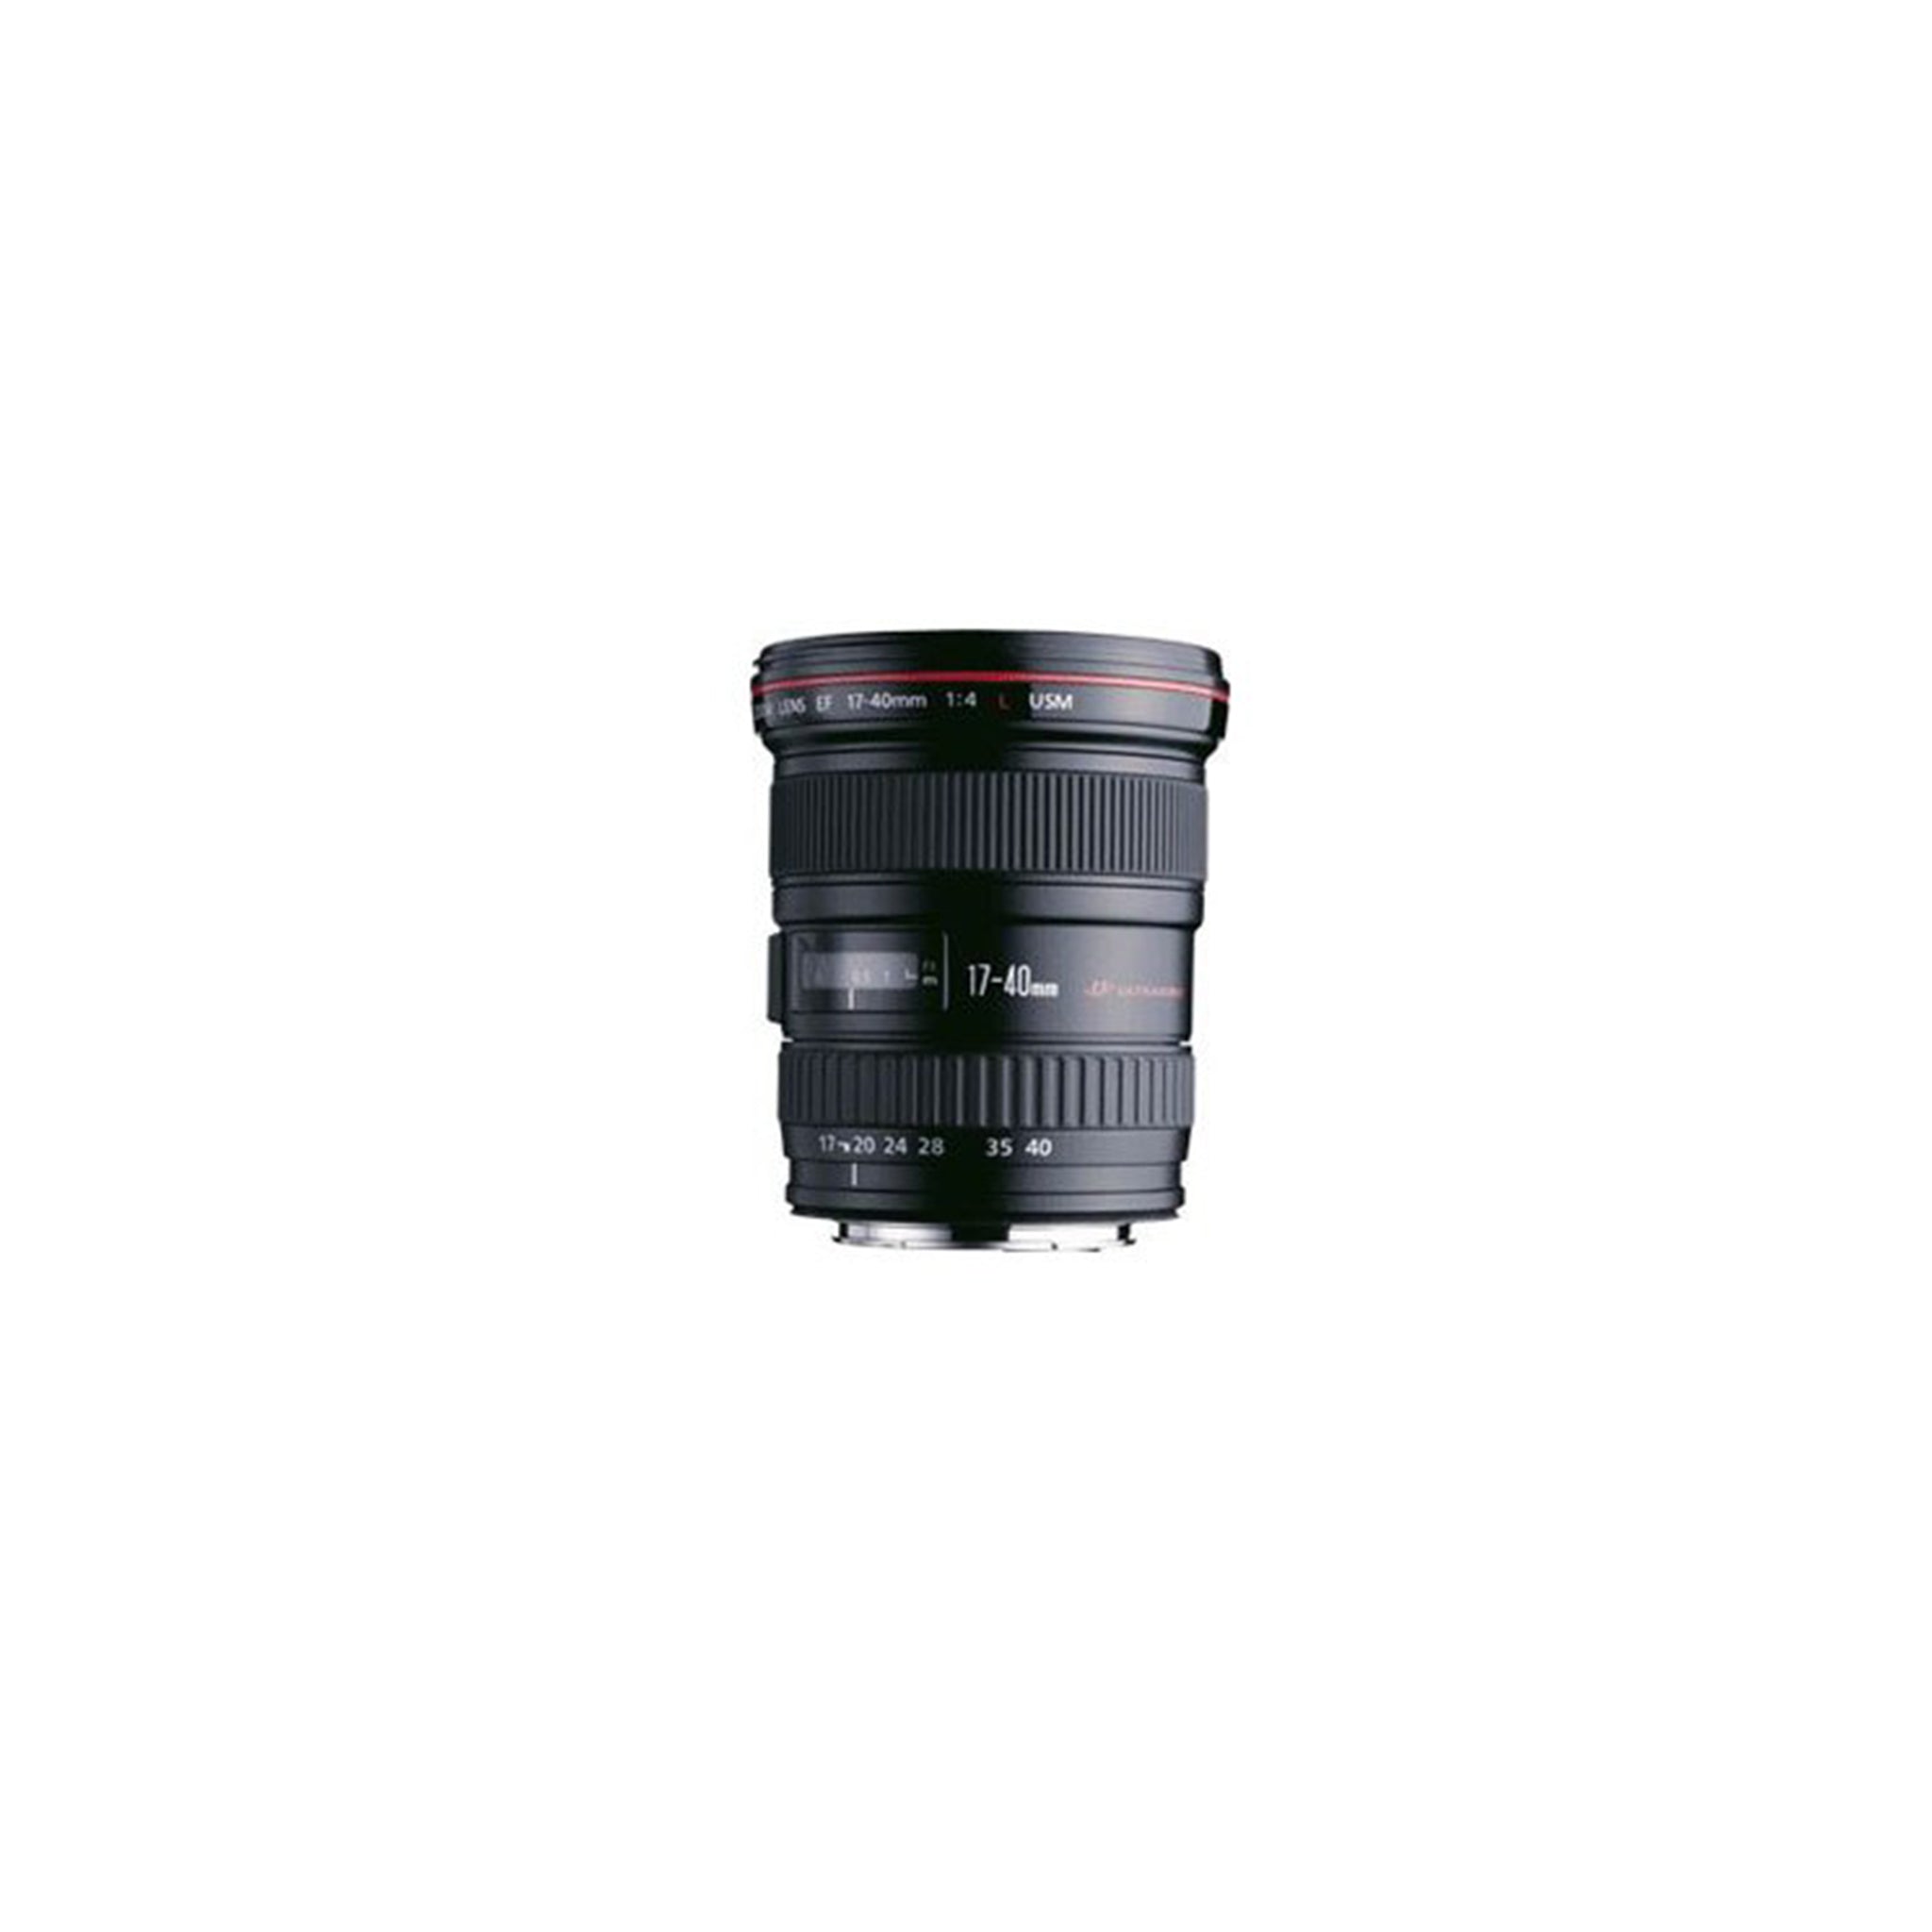 Canon EF 17-40mm F4L USM Lens